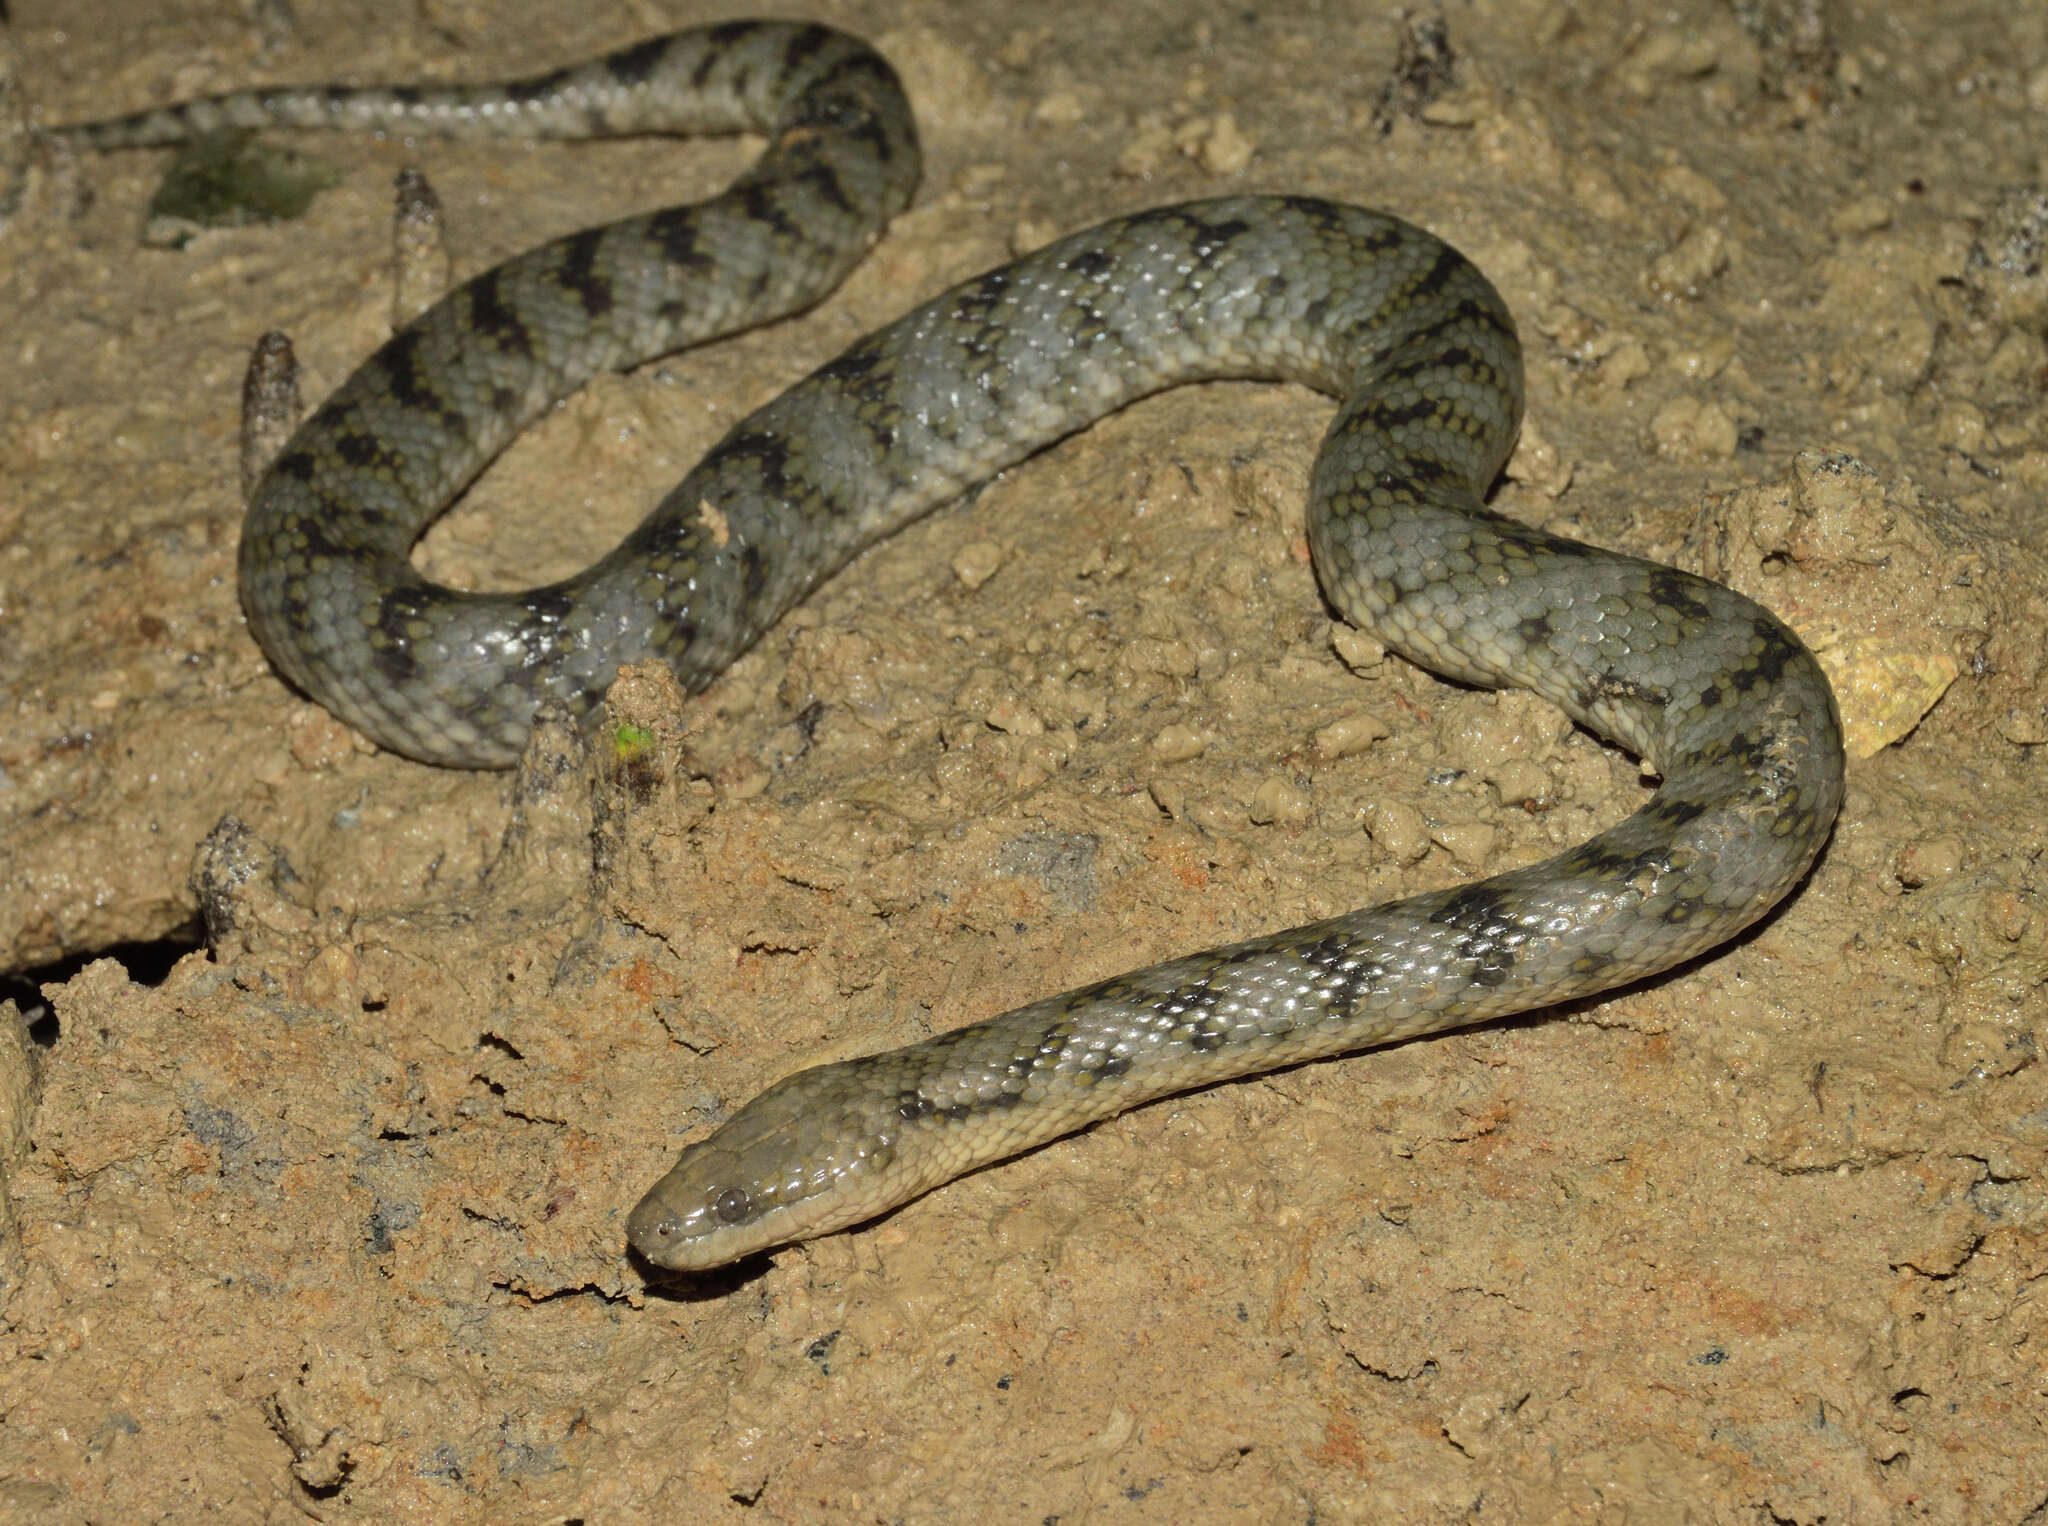 Image of Richardson’s grey mangrove snake